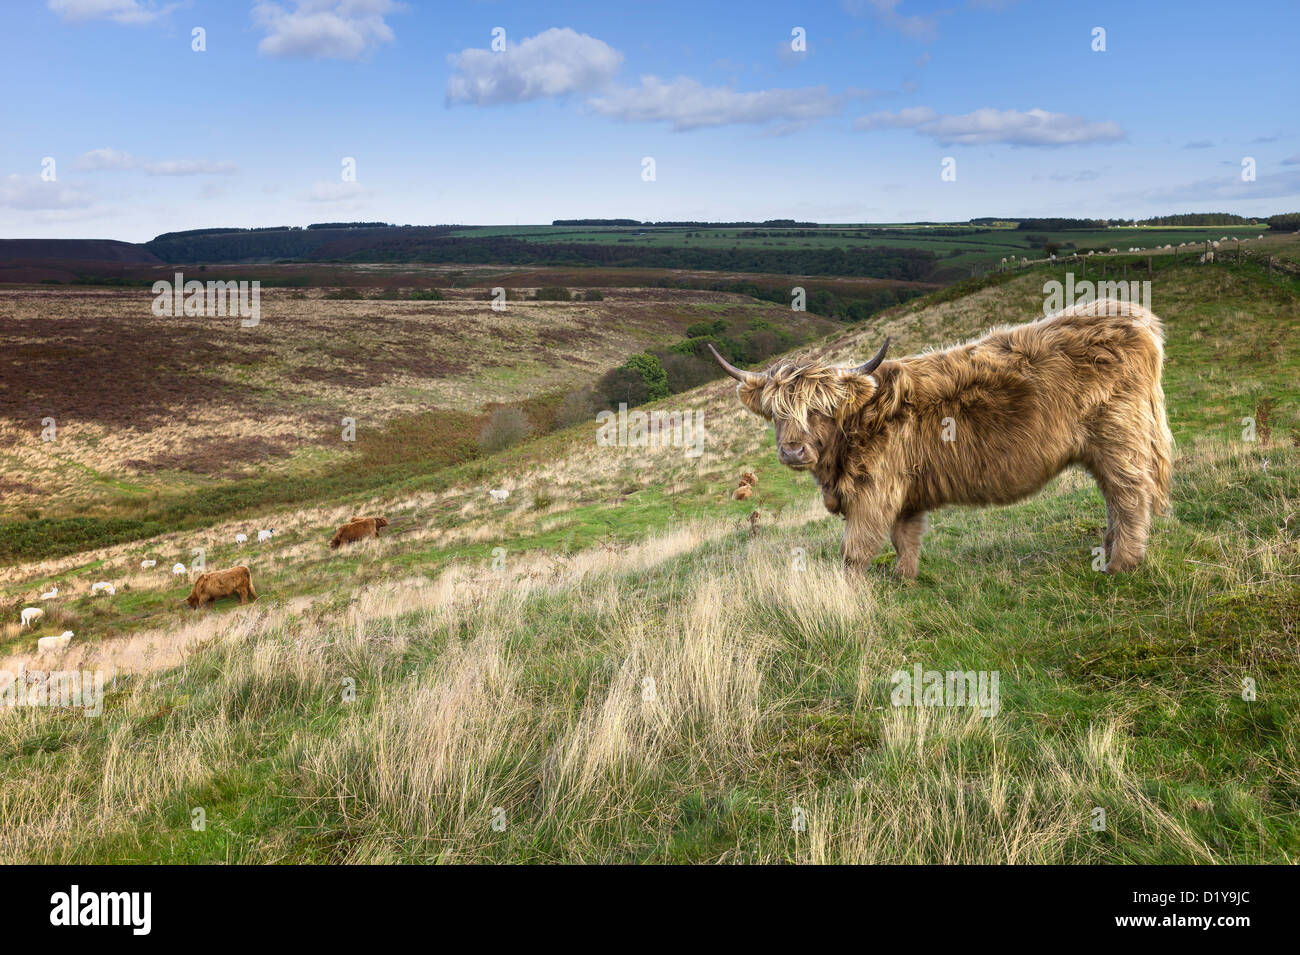 Les vaches highland écossais aux cheveux longs paissent en landes dans le parc national des North York Moors National Park, Levisham, Yorkshire, UK. Banque D'Images